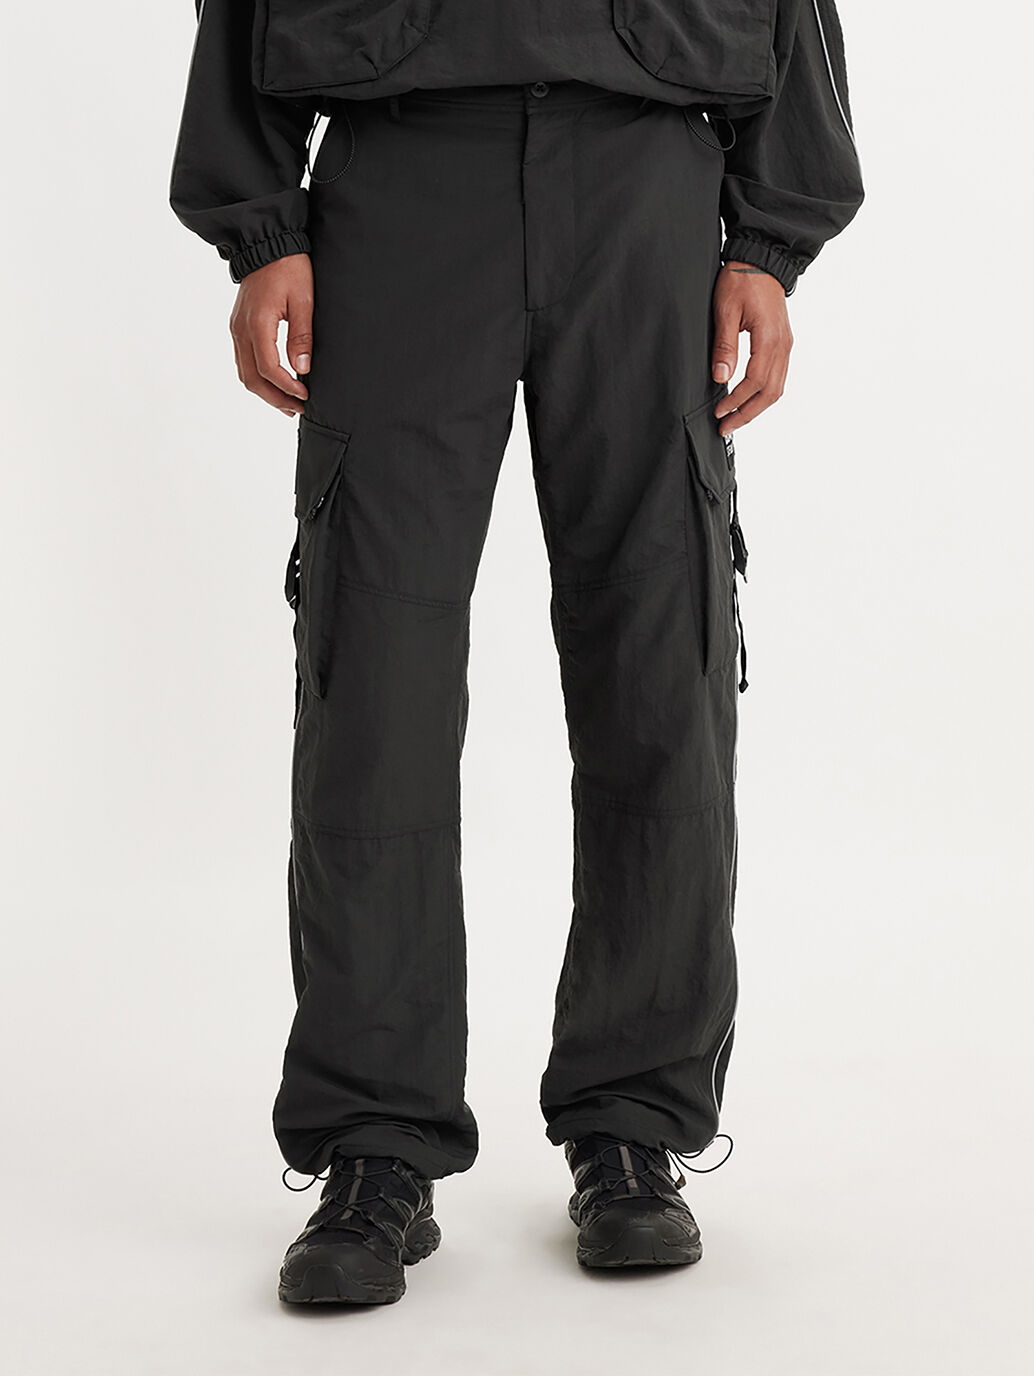 Levi's® Men's SilverTab™ Loose Cargo Pants - Be The Bridge - Black | Levi's  TH